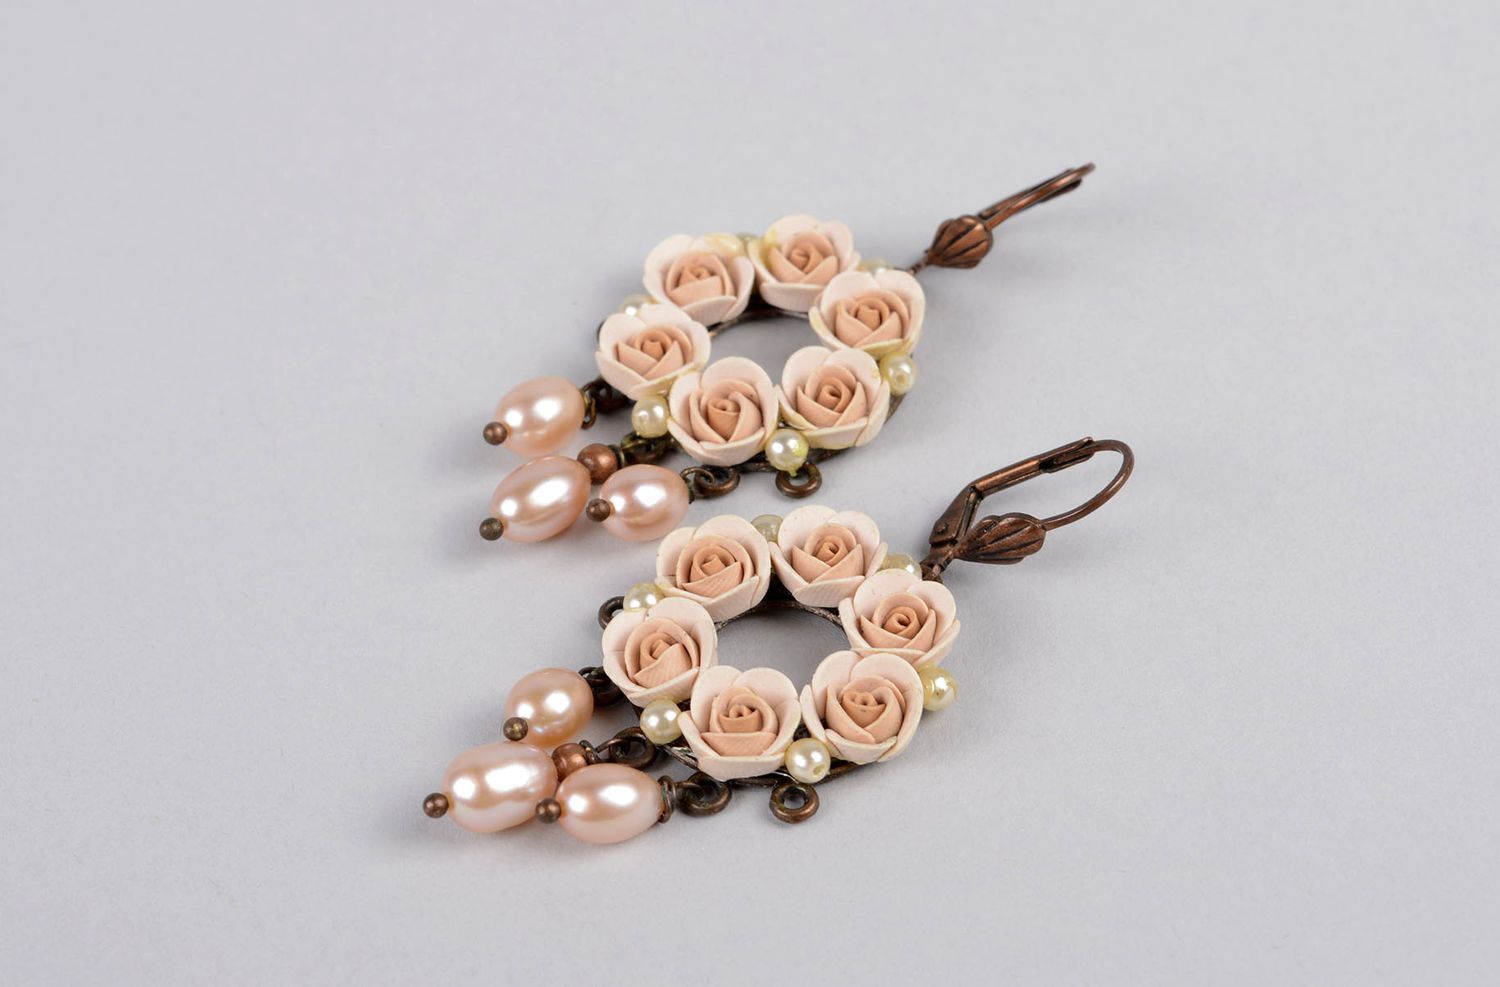 Элитная бижутерия хэнд мейд модные серьги с розами украшение ручной работы  фото 2